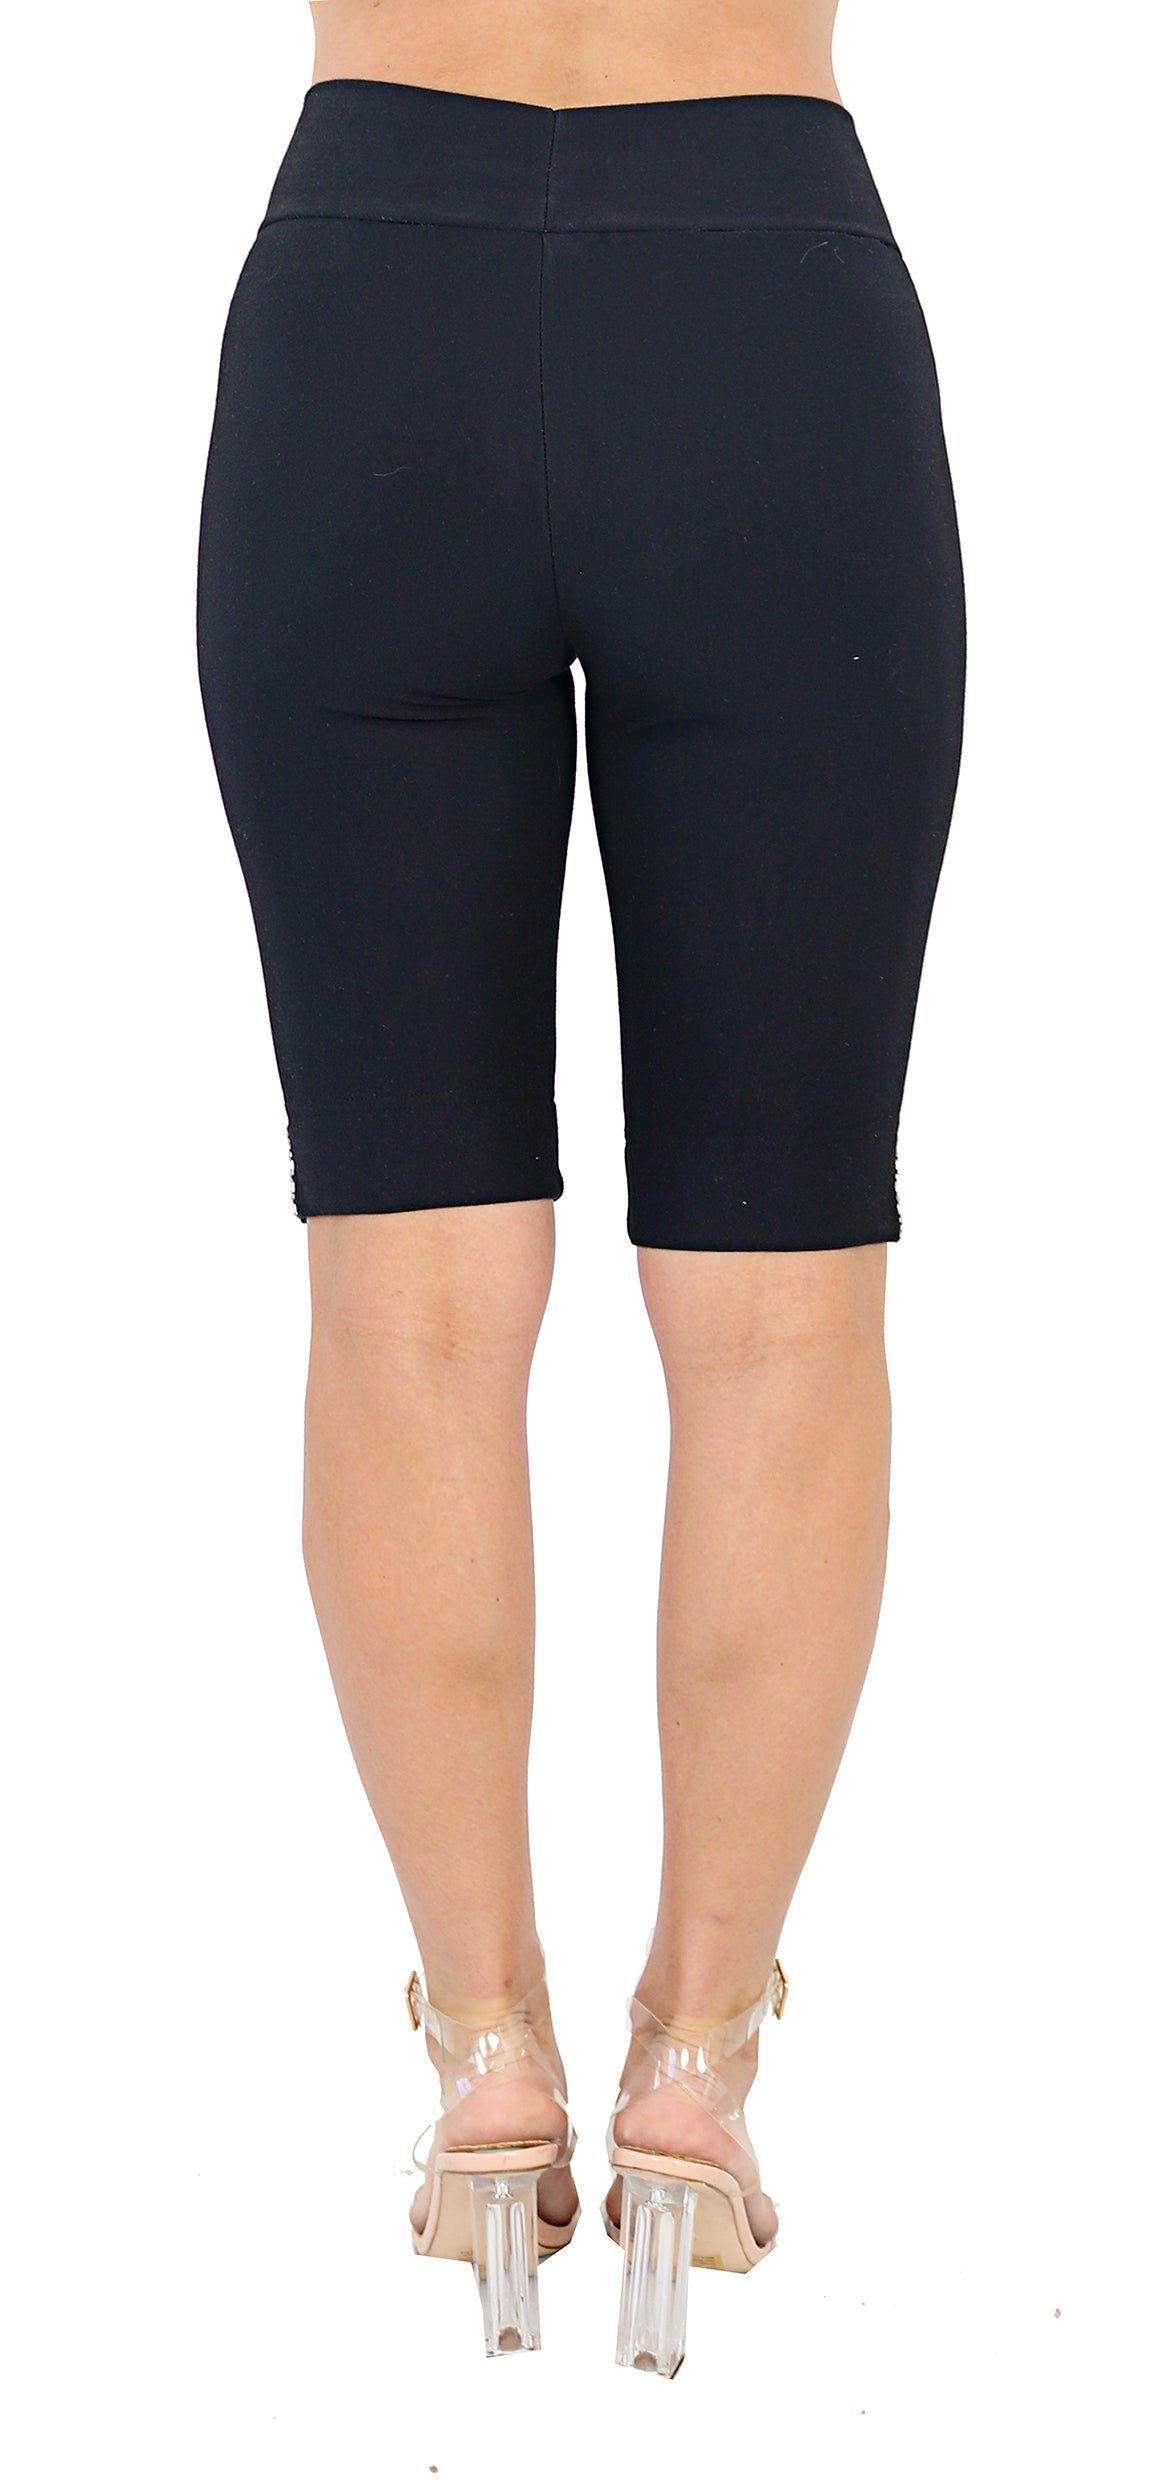 TrueSlim™ Black Short Knit Women's Leggings with Stone Detail